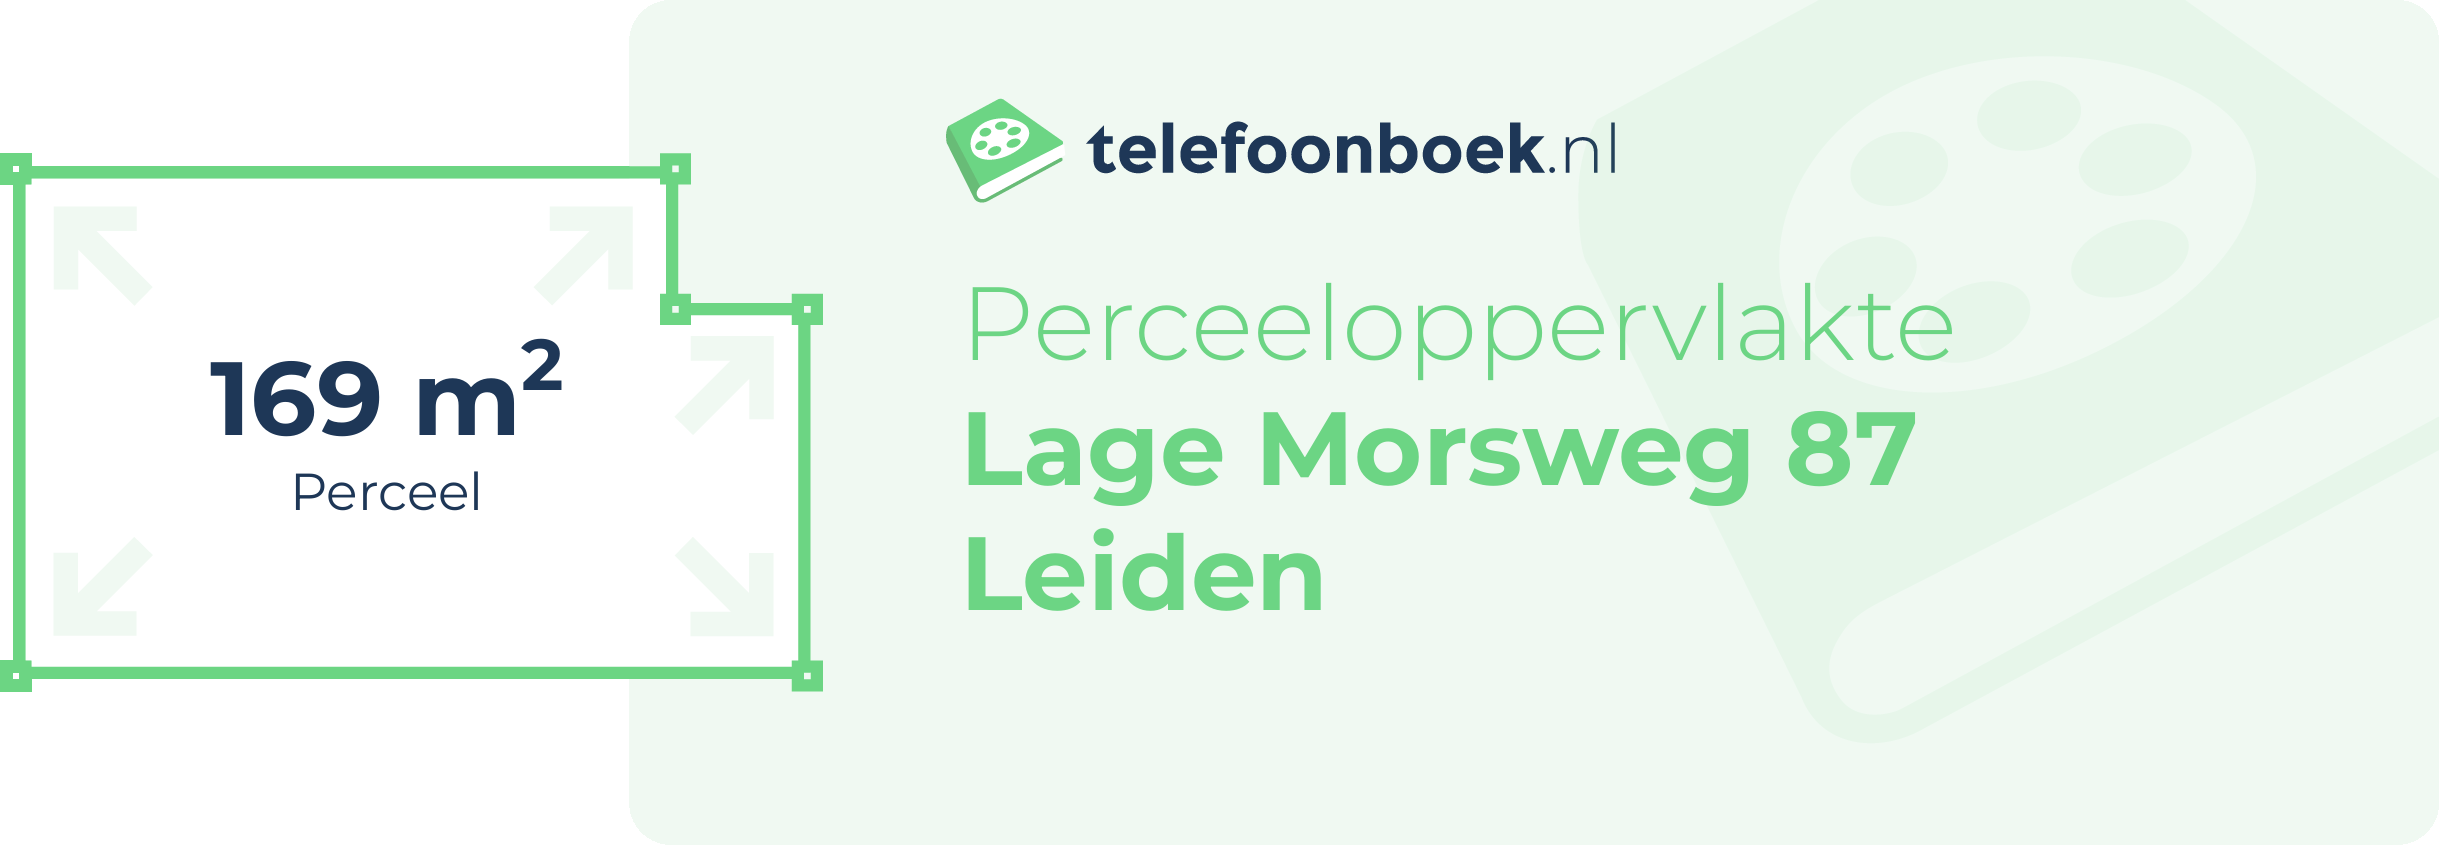 Perceeloppervlakte Lage Morsweg 87 Leiden